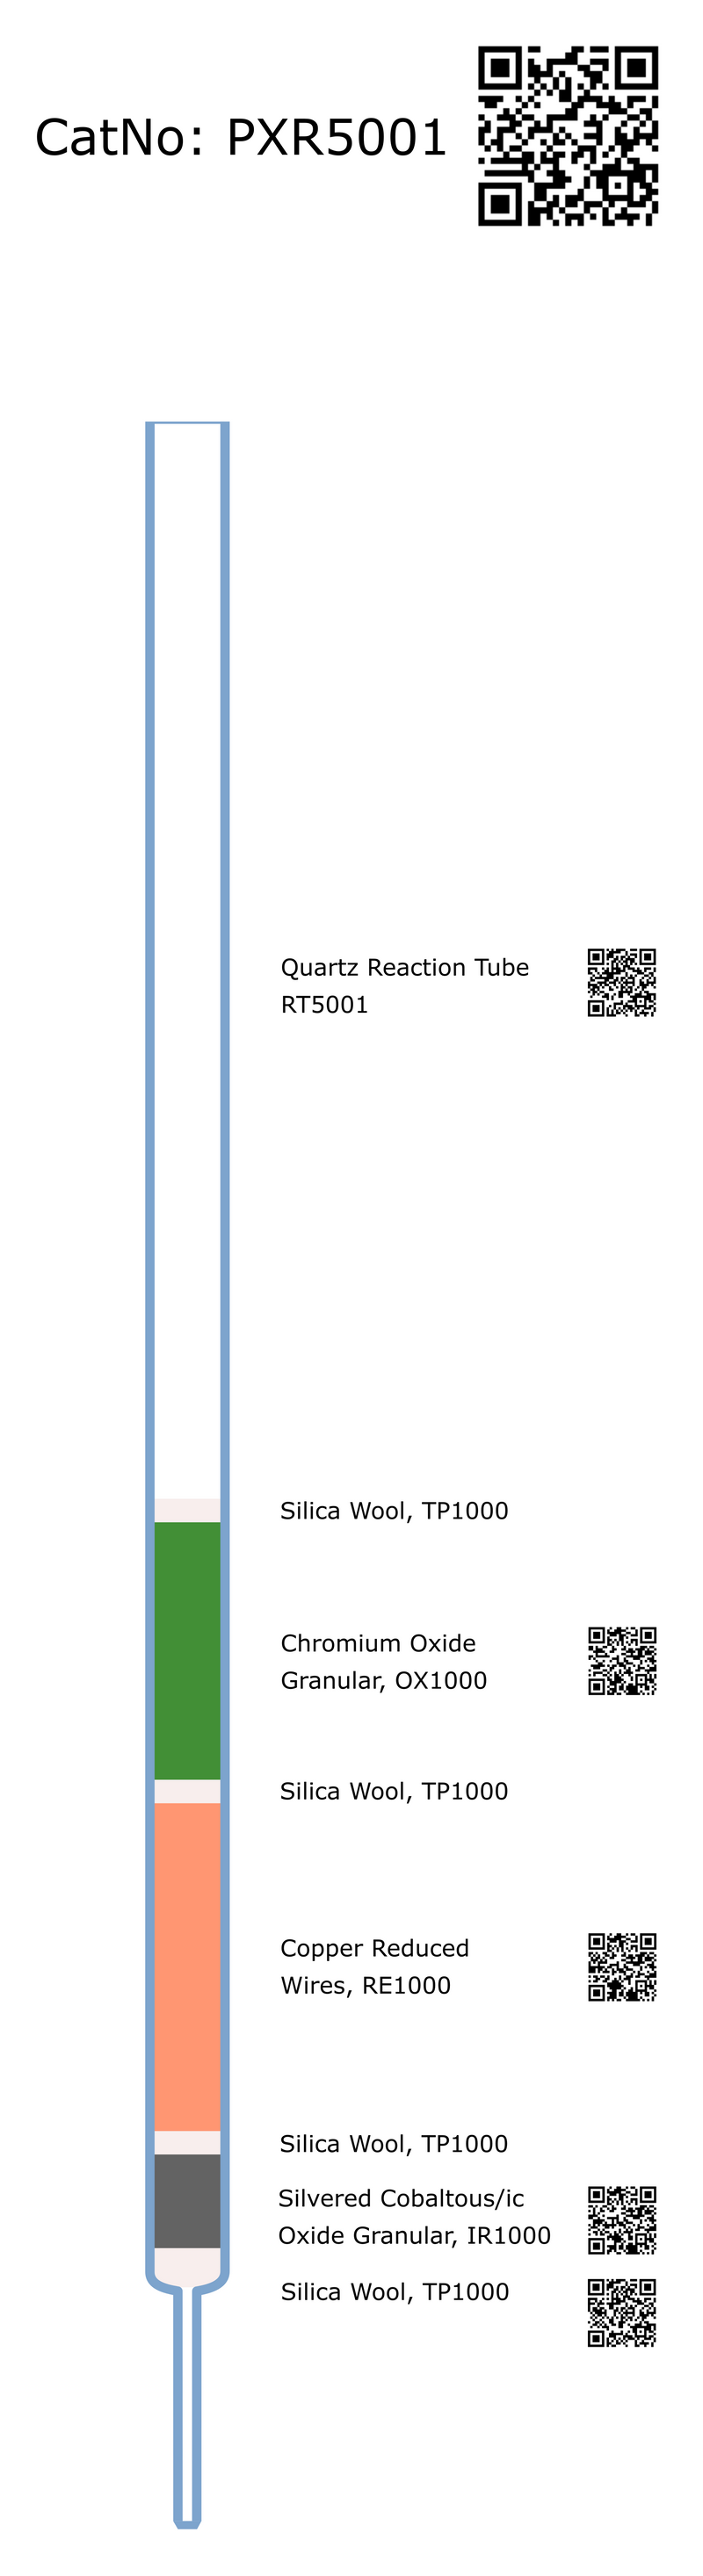 PXR5001, Prepacked Reaction Tube, NC, CHN E13041